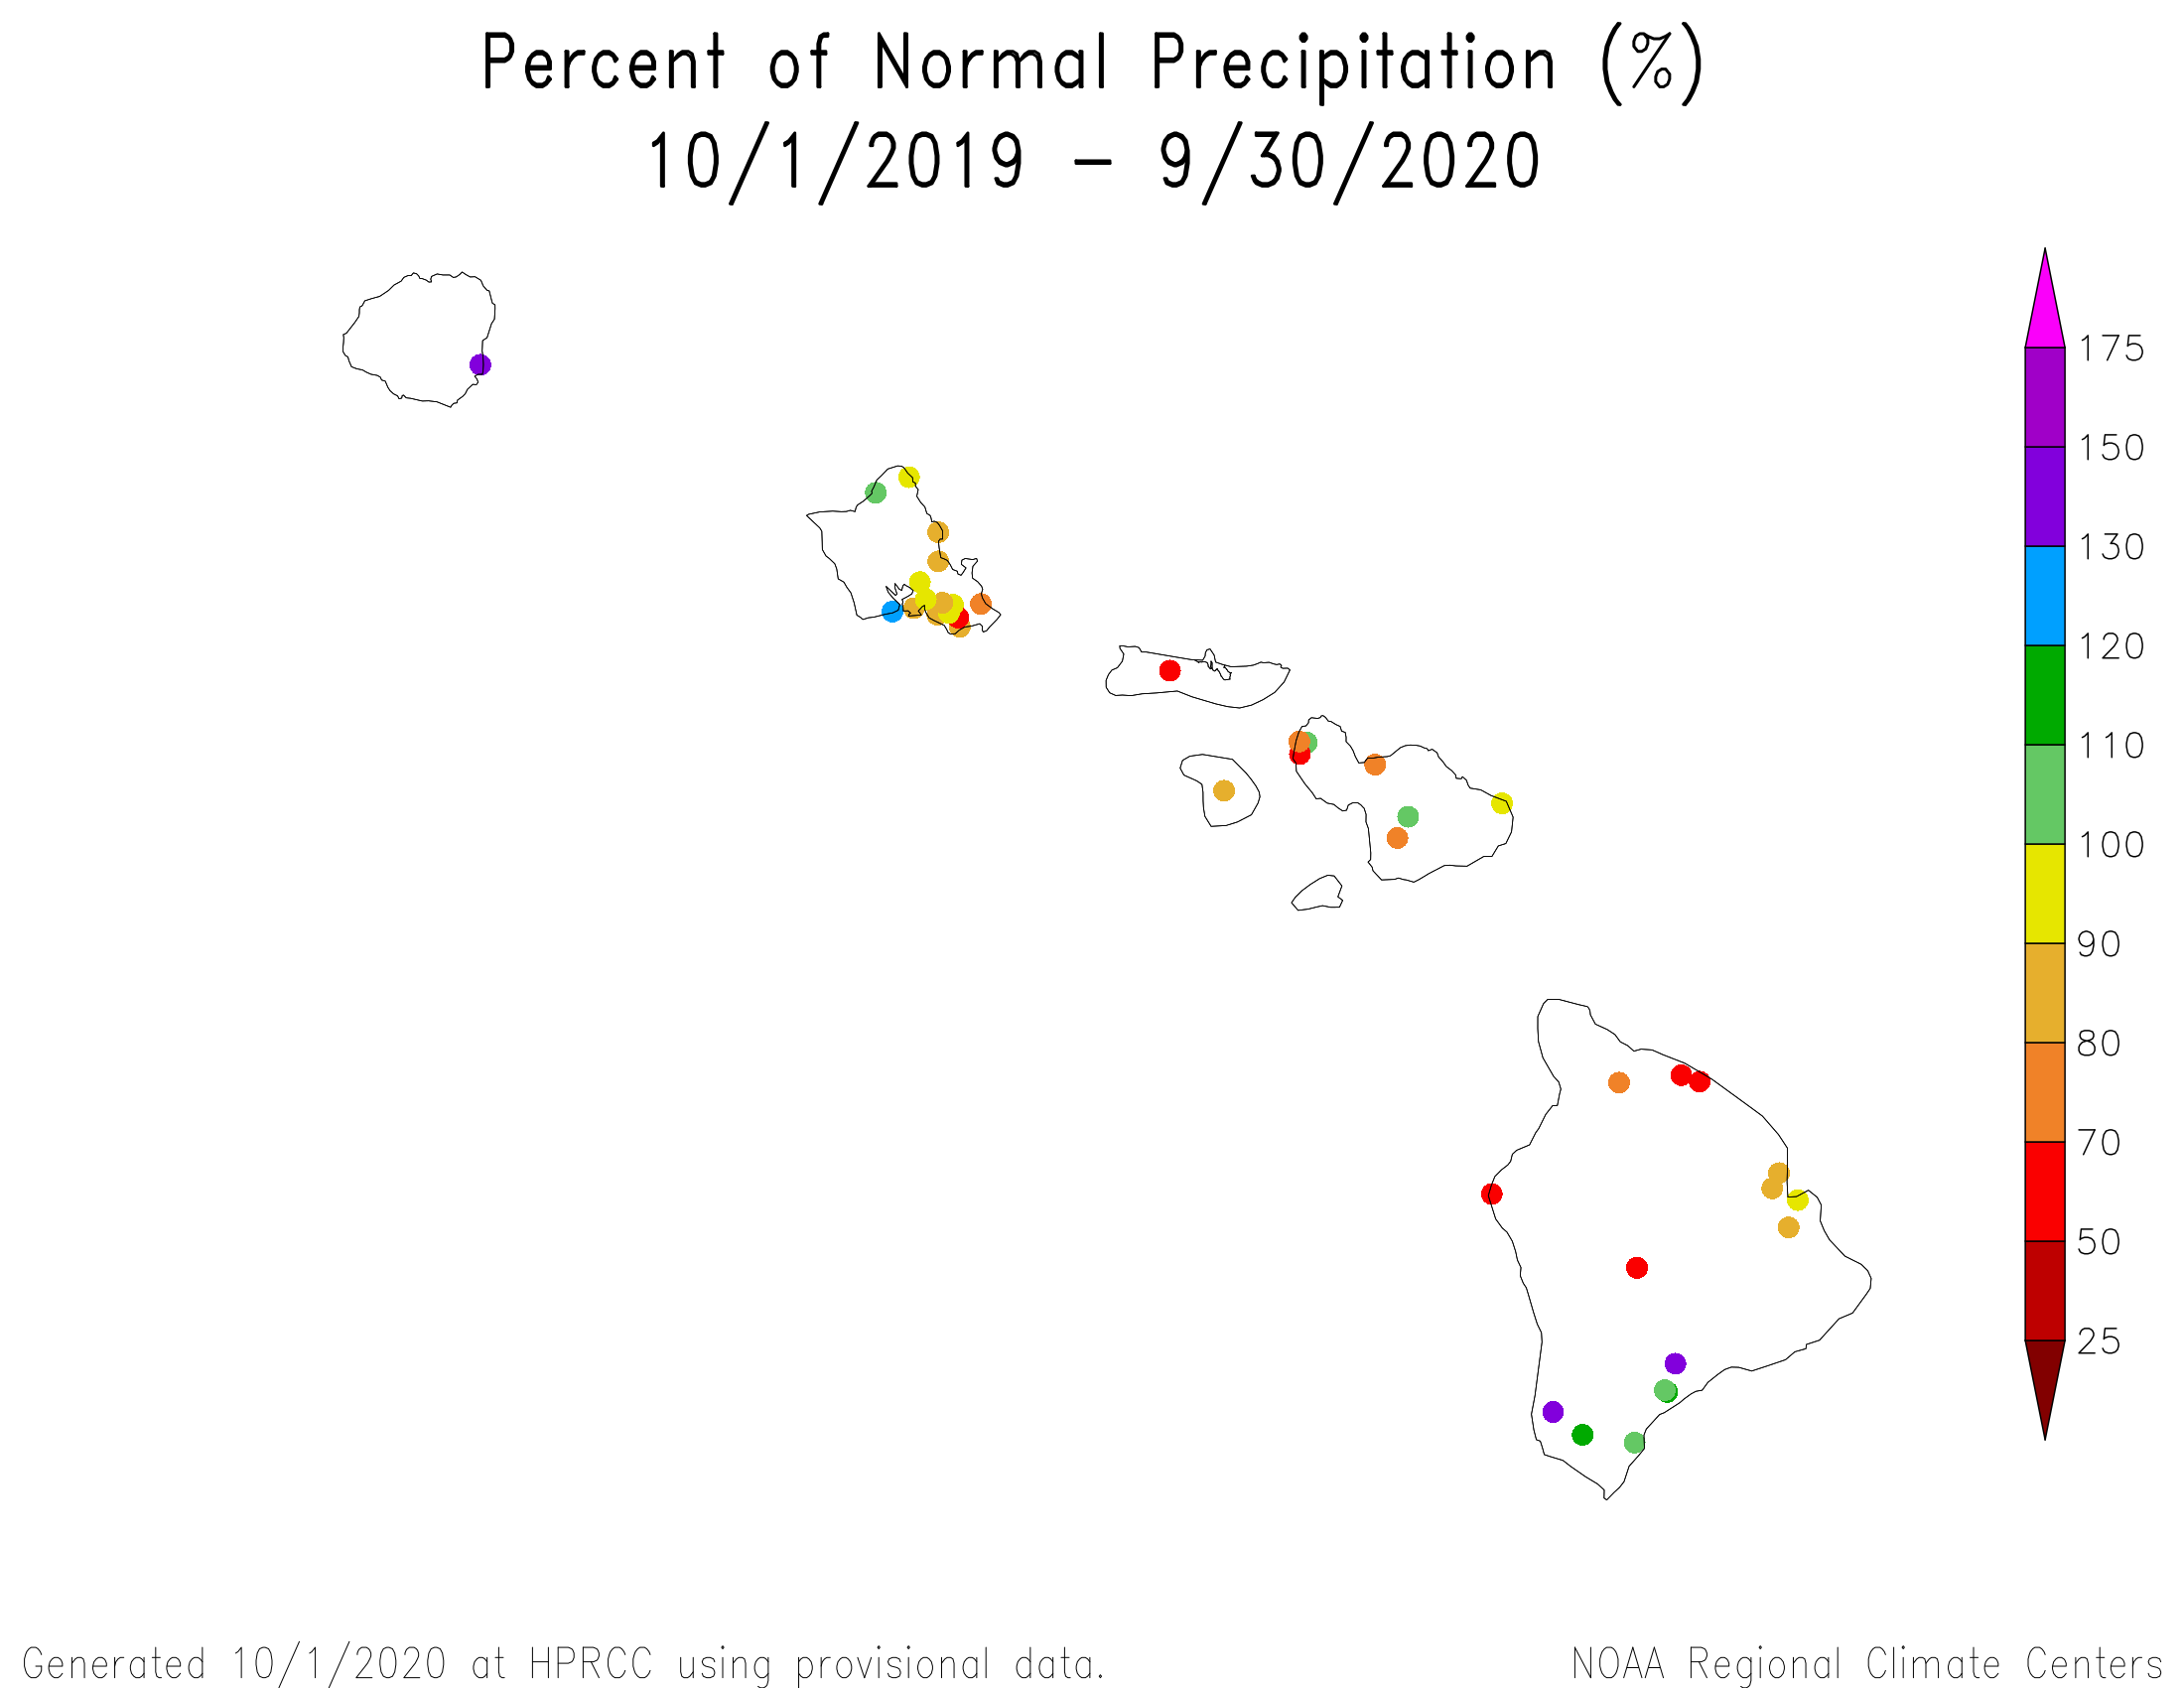 Hawaii Percent of Normal Precipitation, October 2019-September 2020